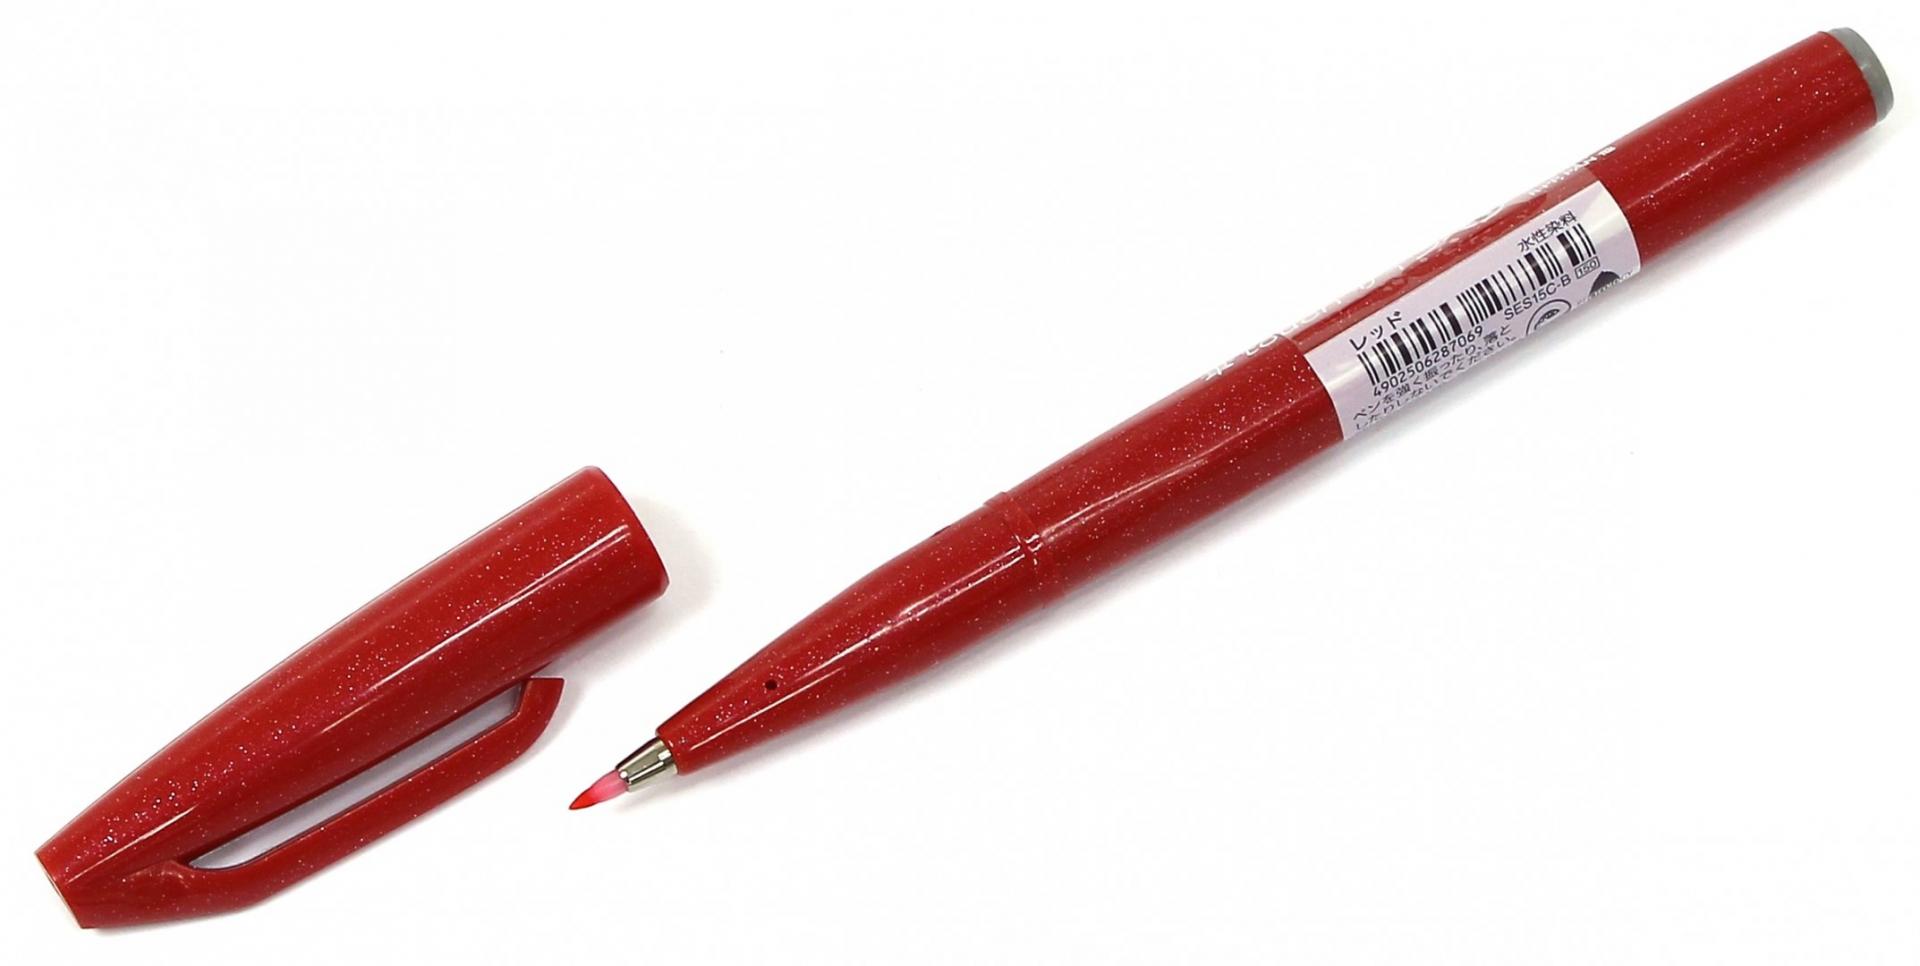 Am the pens red. Красные ручки кисти для шкафа. Кисточка, цвет красный 13,5 см.